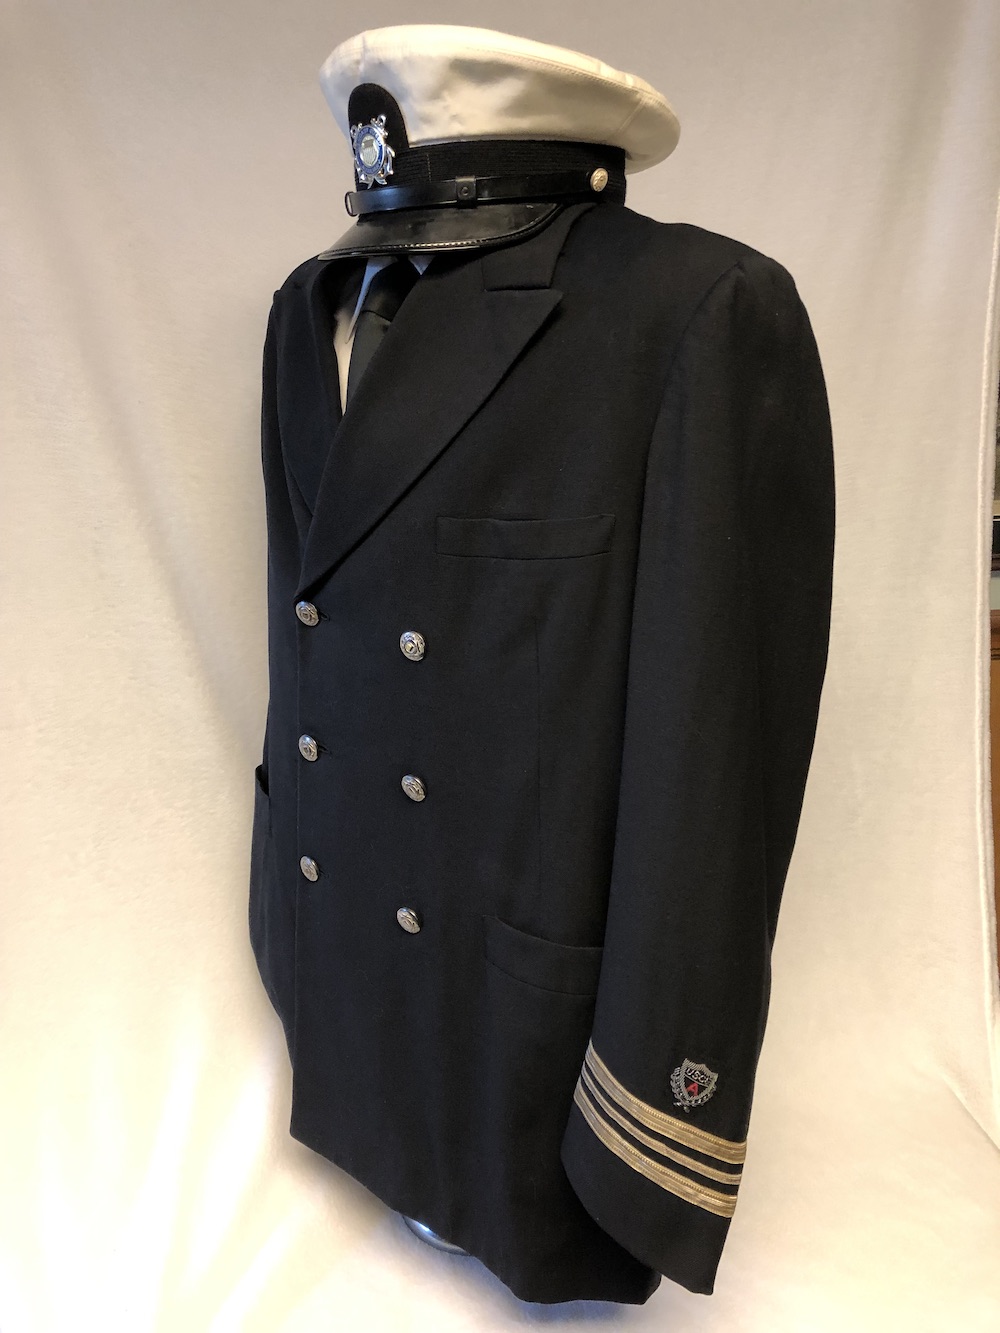 Uniform Service Dress Blue 1960 left side view